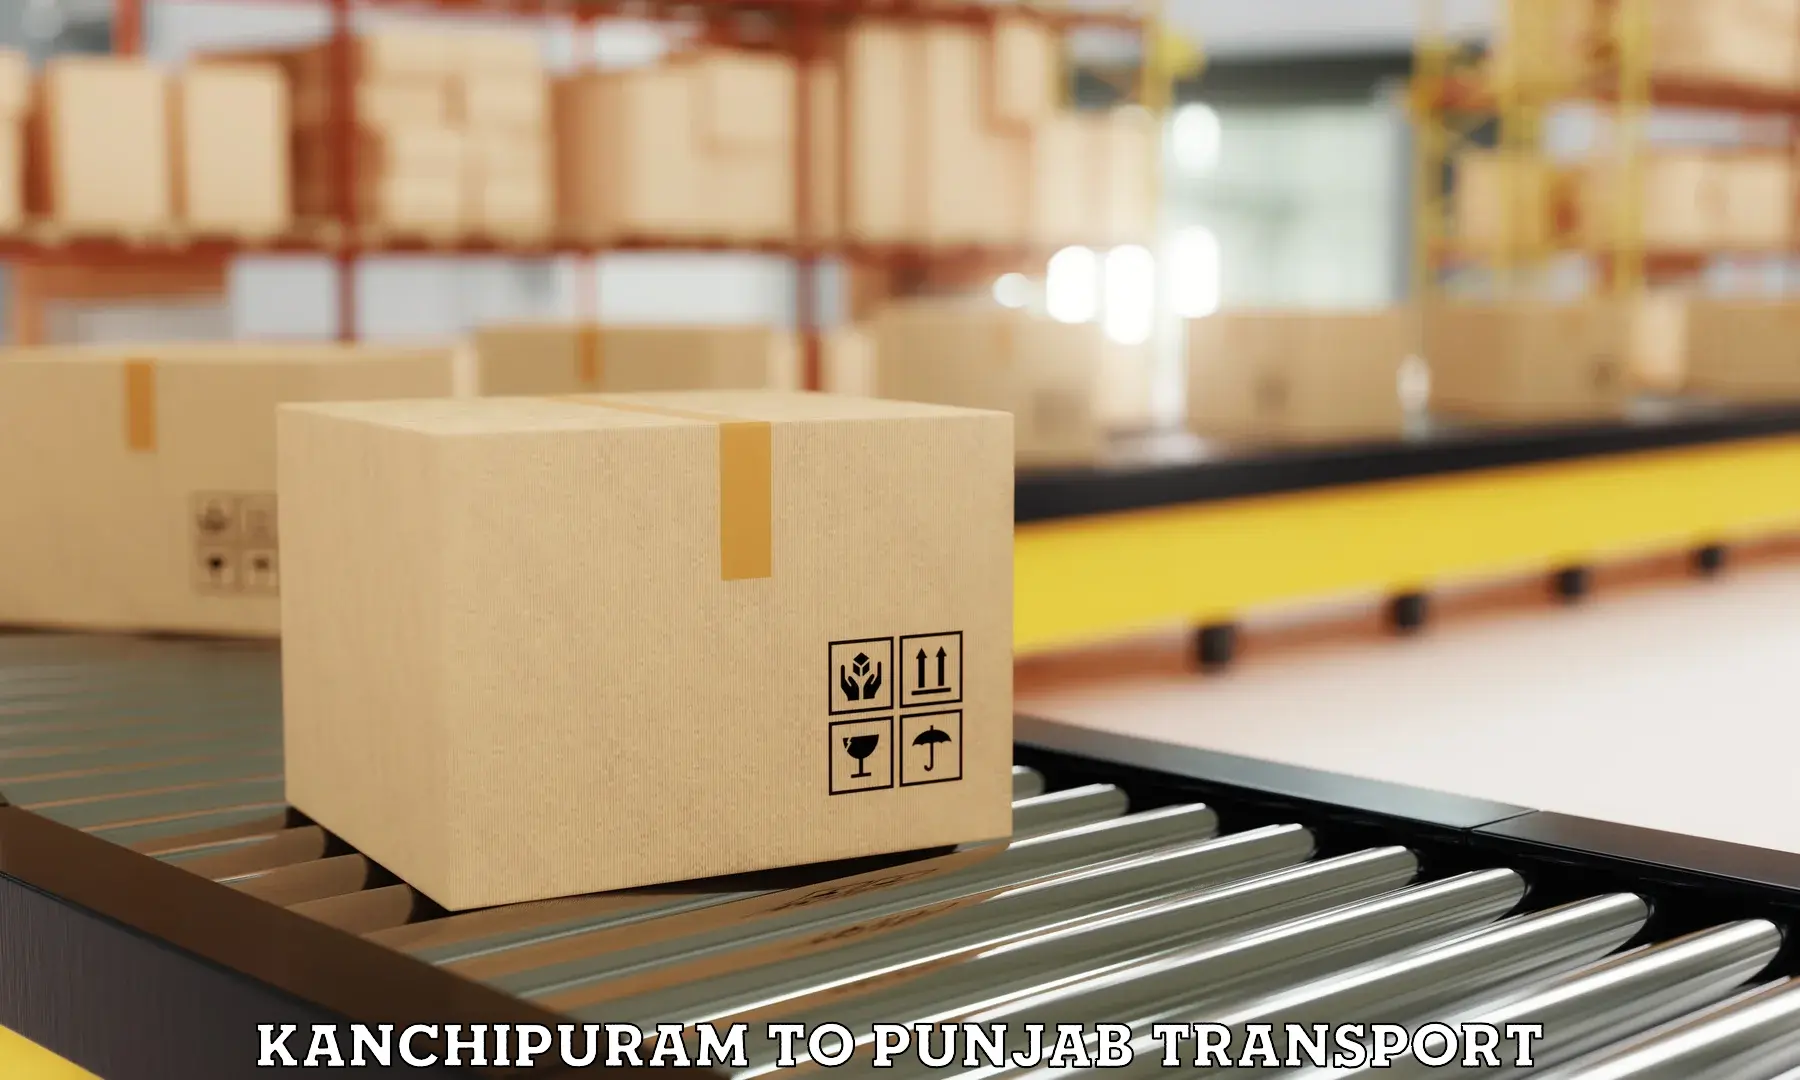 Furniture transport service Kanchipuram to Dasuya